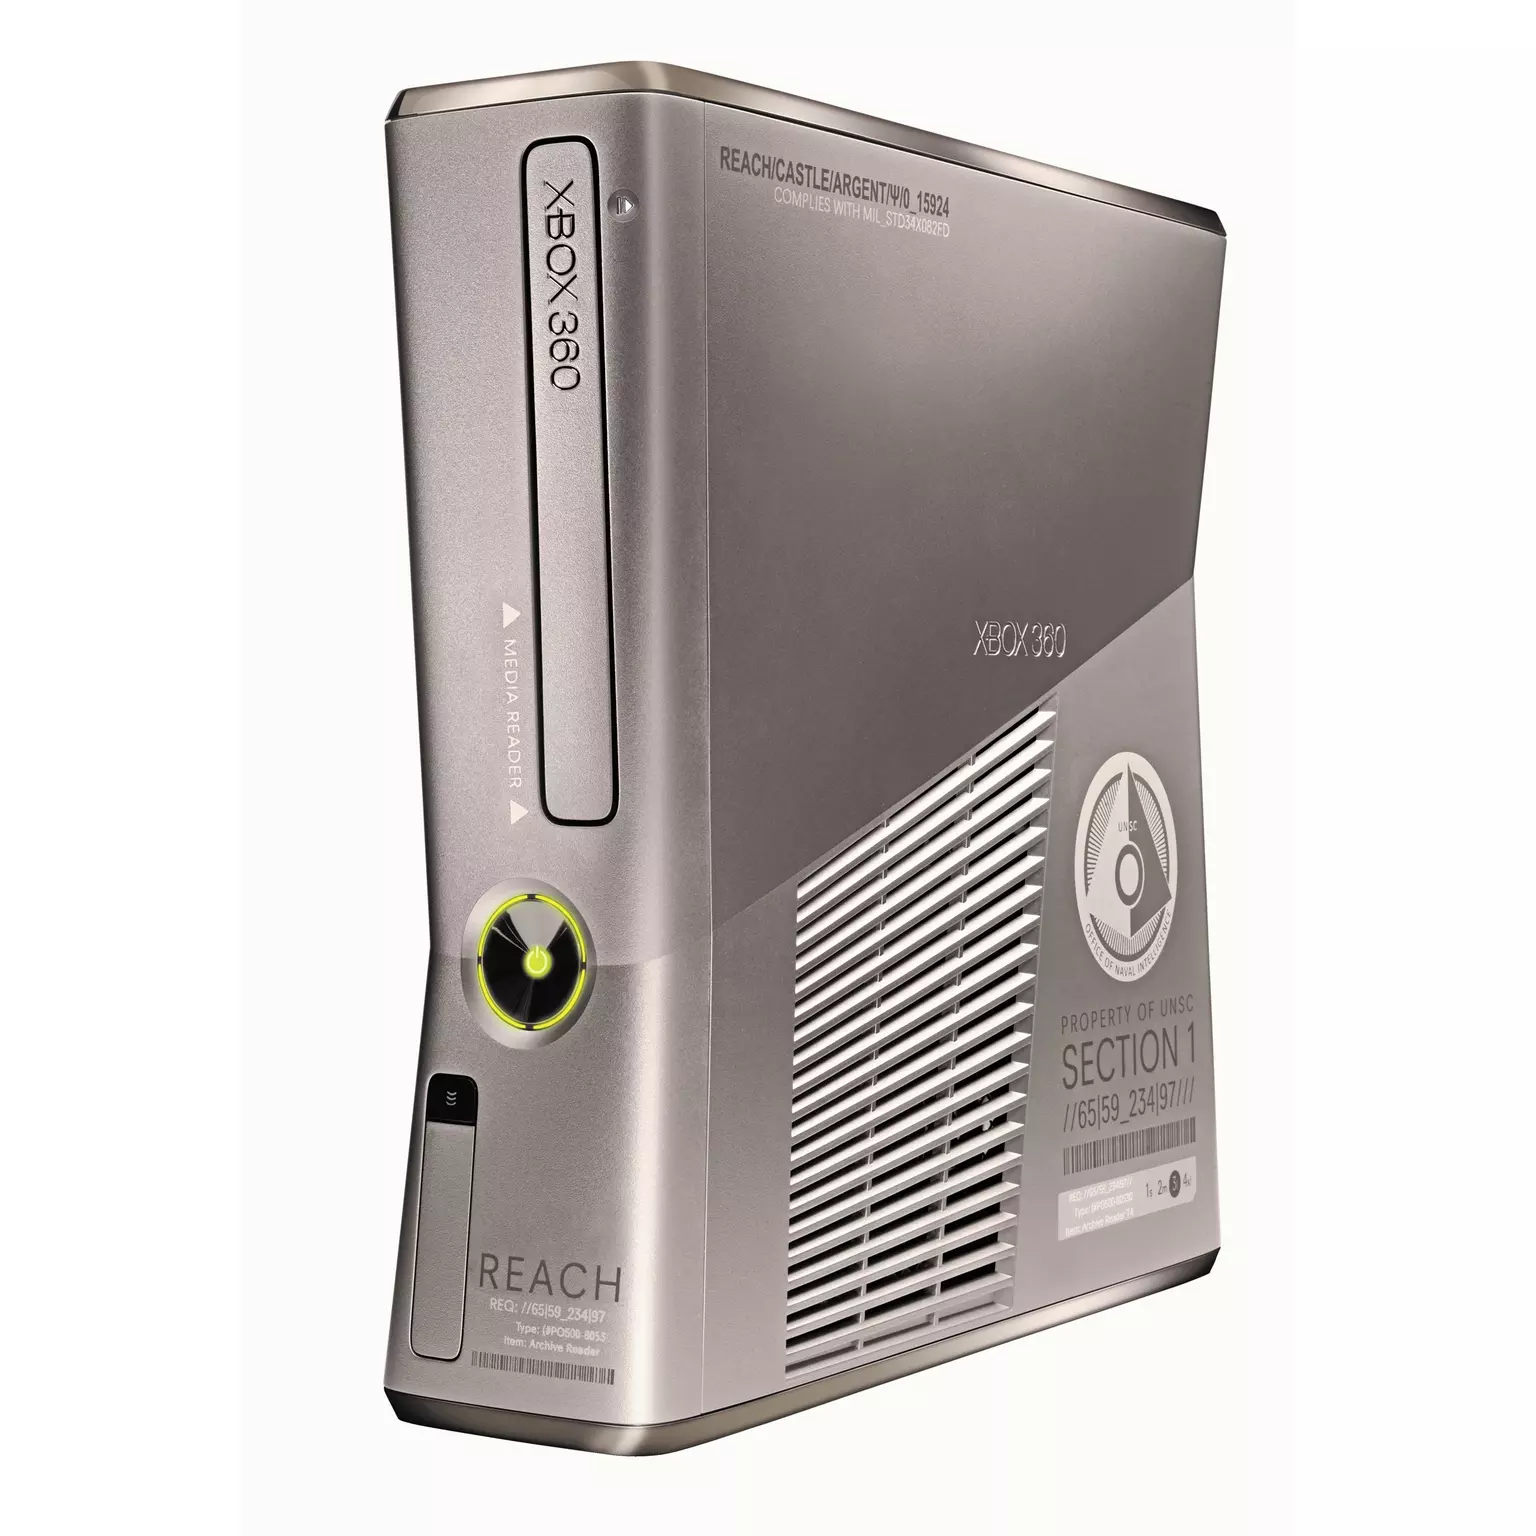 Microsoft-Xbox-360-S-Console-Halo-Reach-Edition-250GB